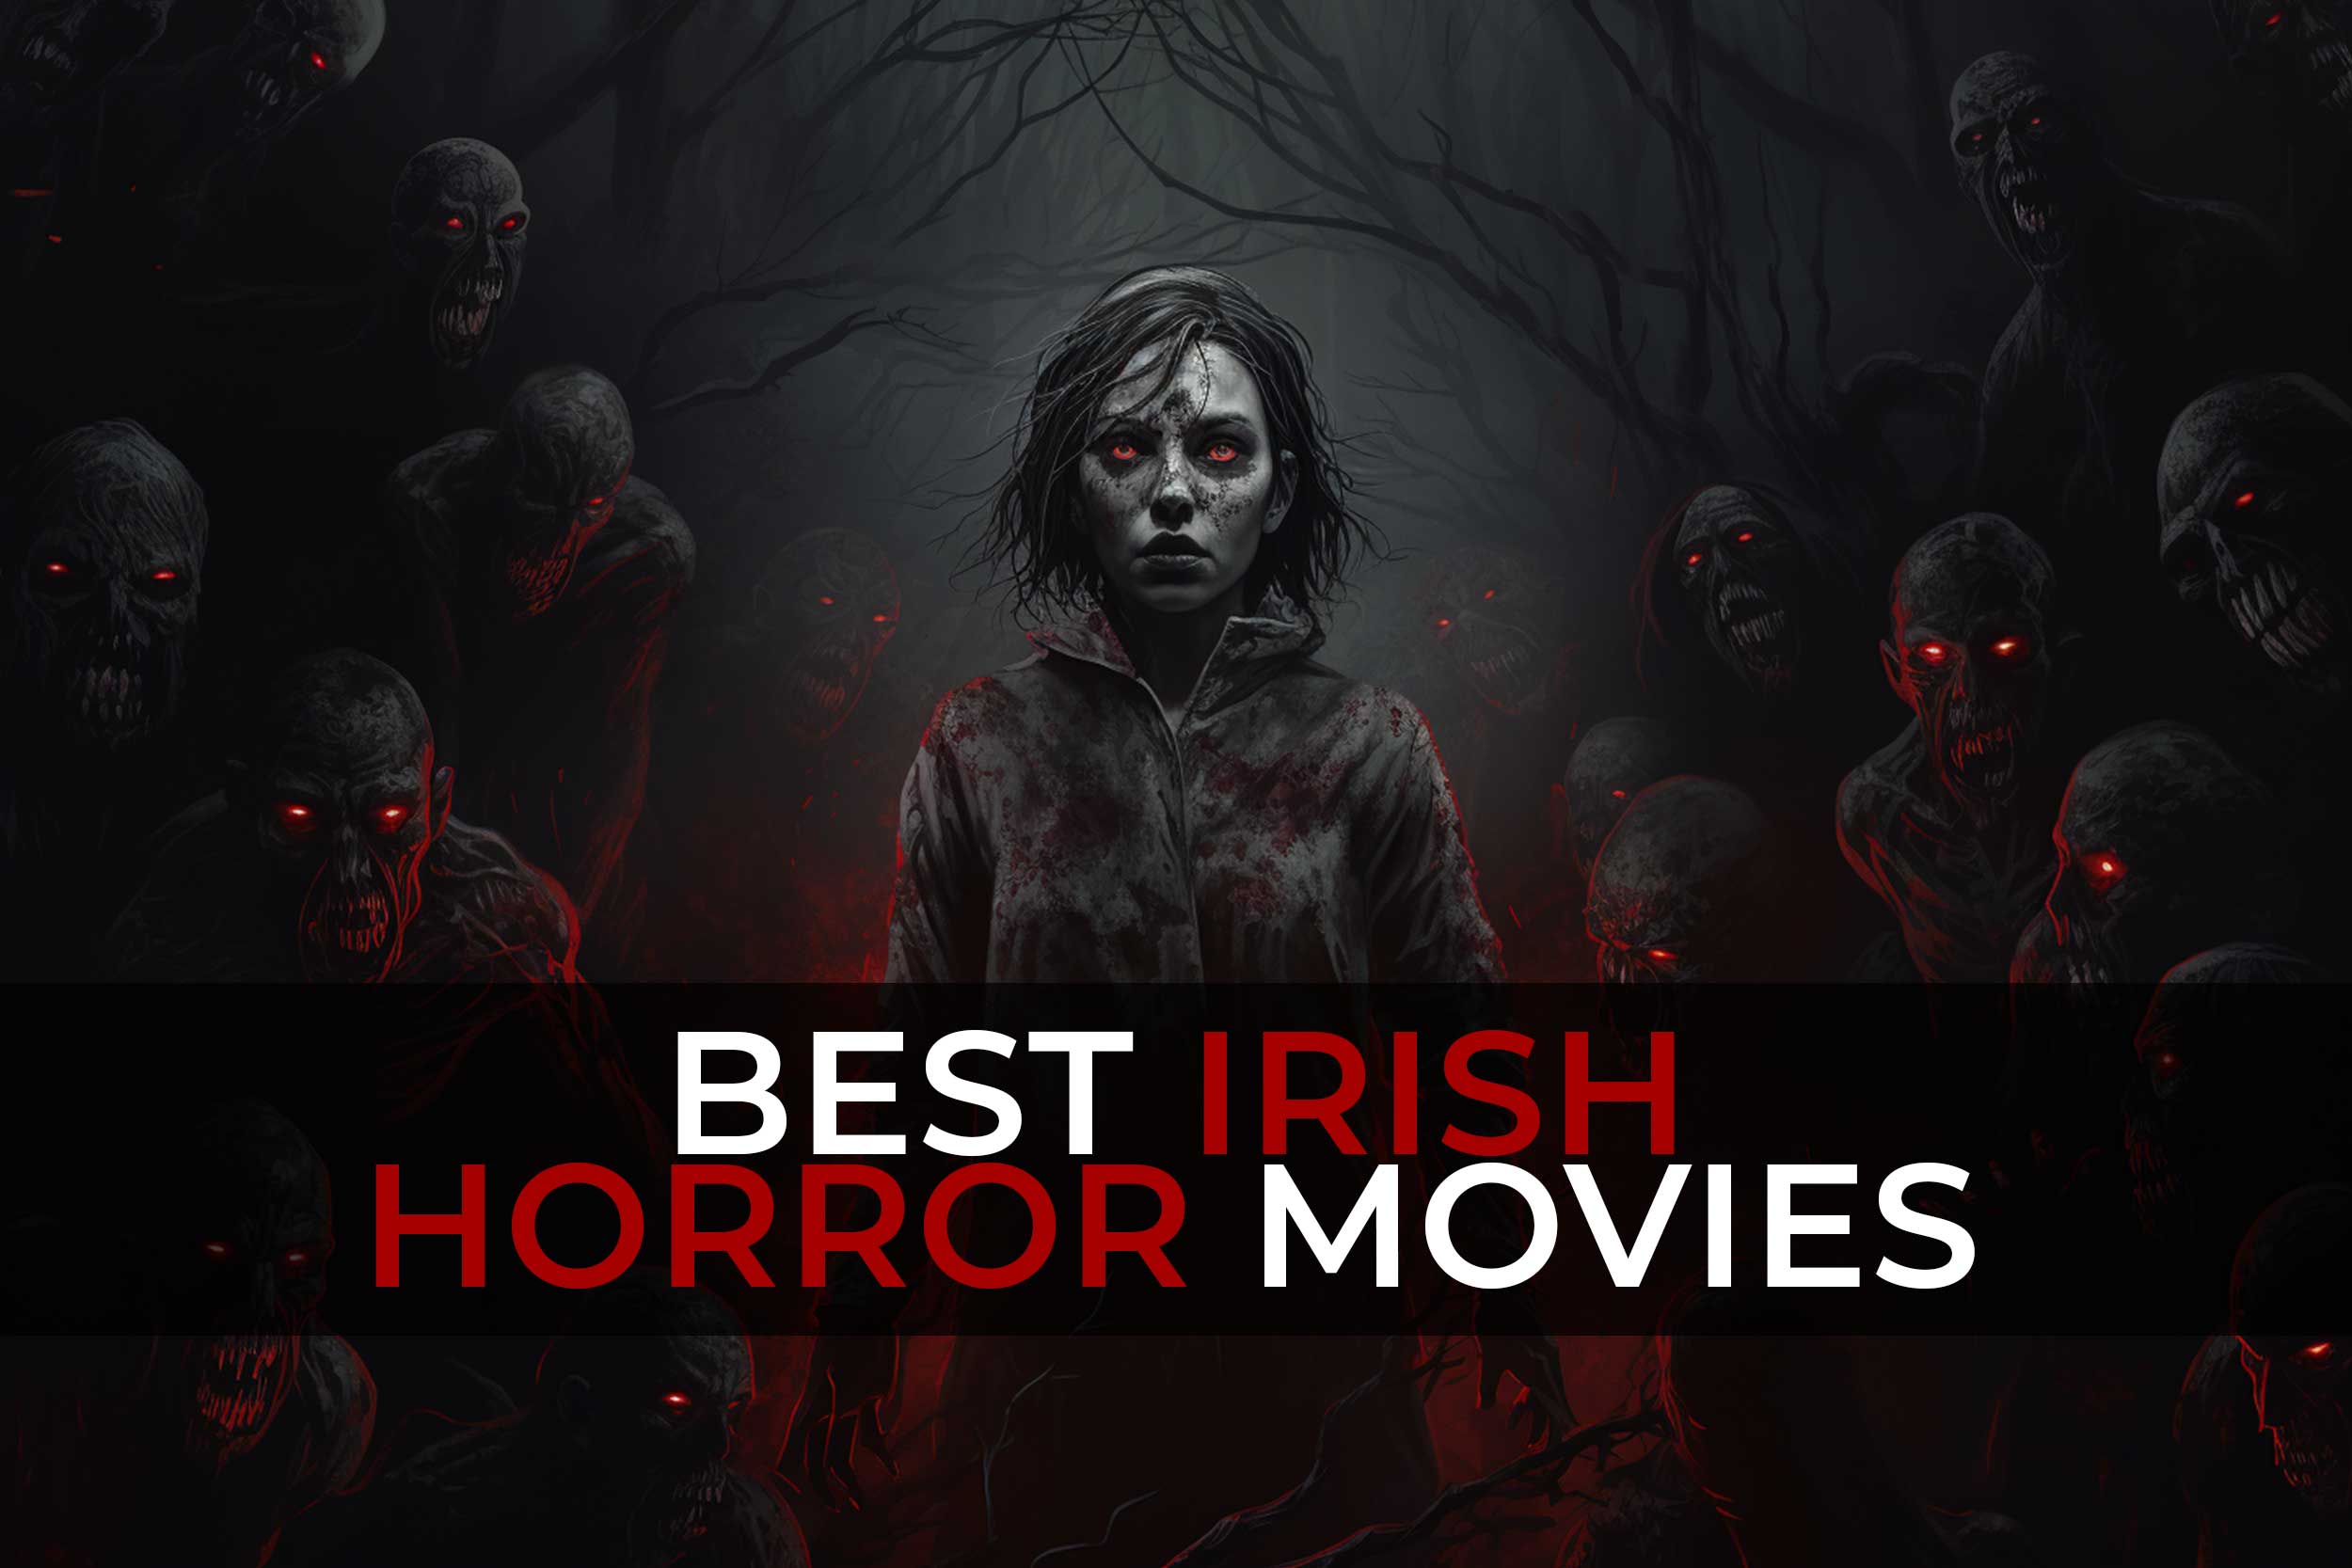 irish horror movies